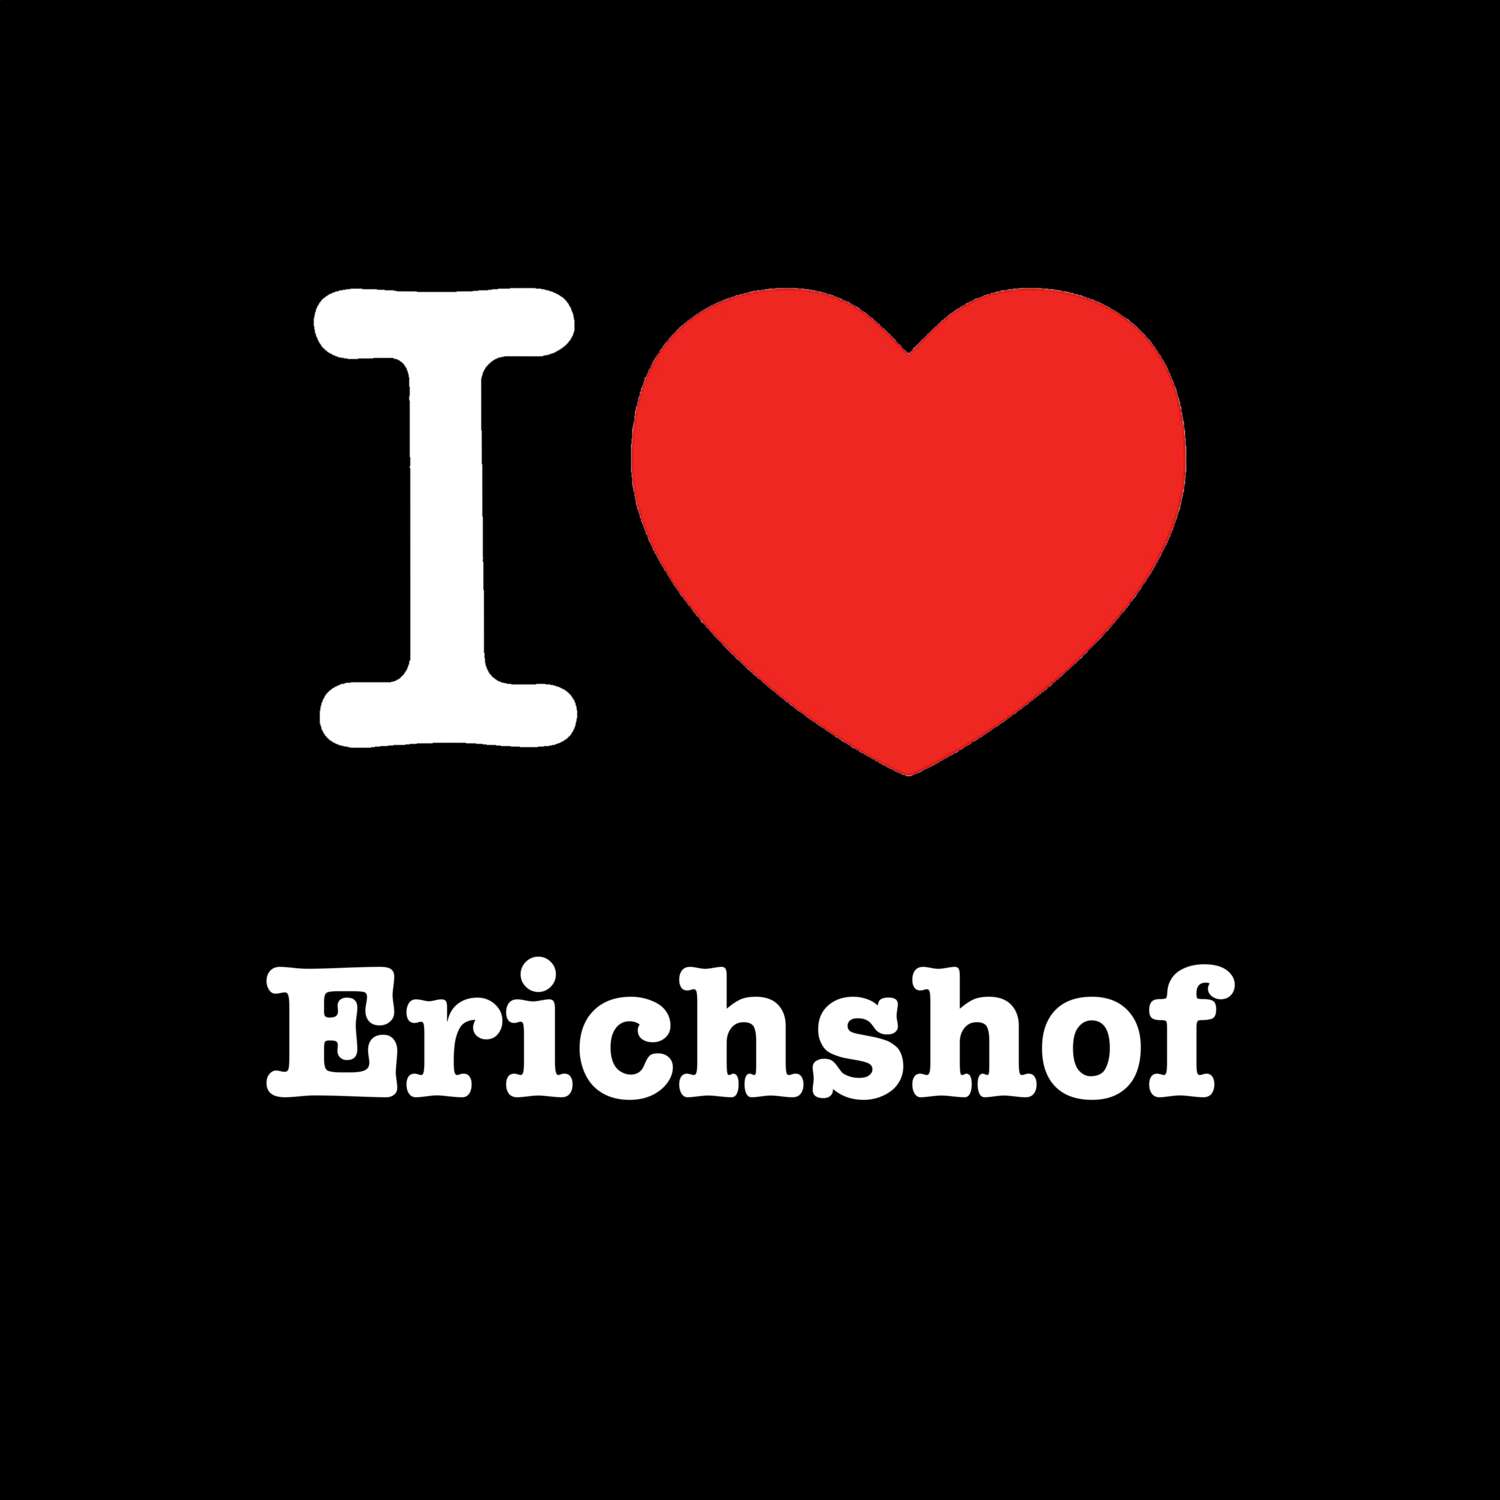 Erichshof T-Shirt »I love«